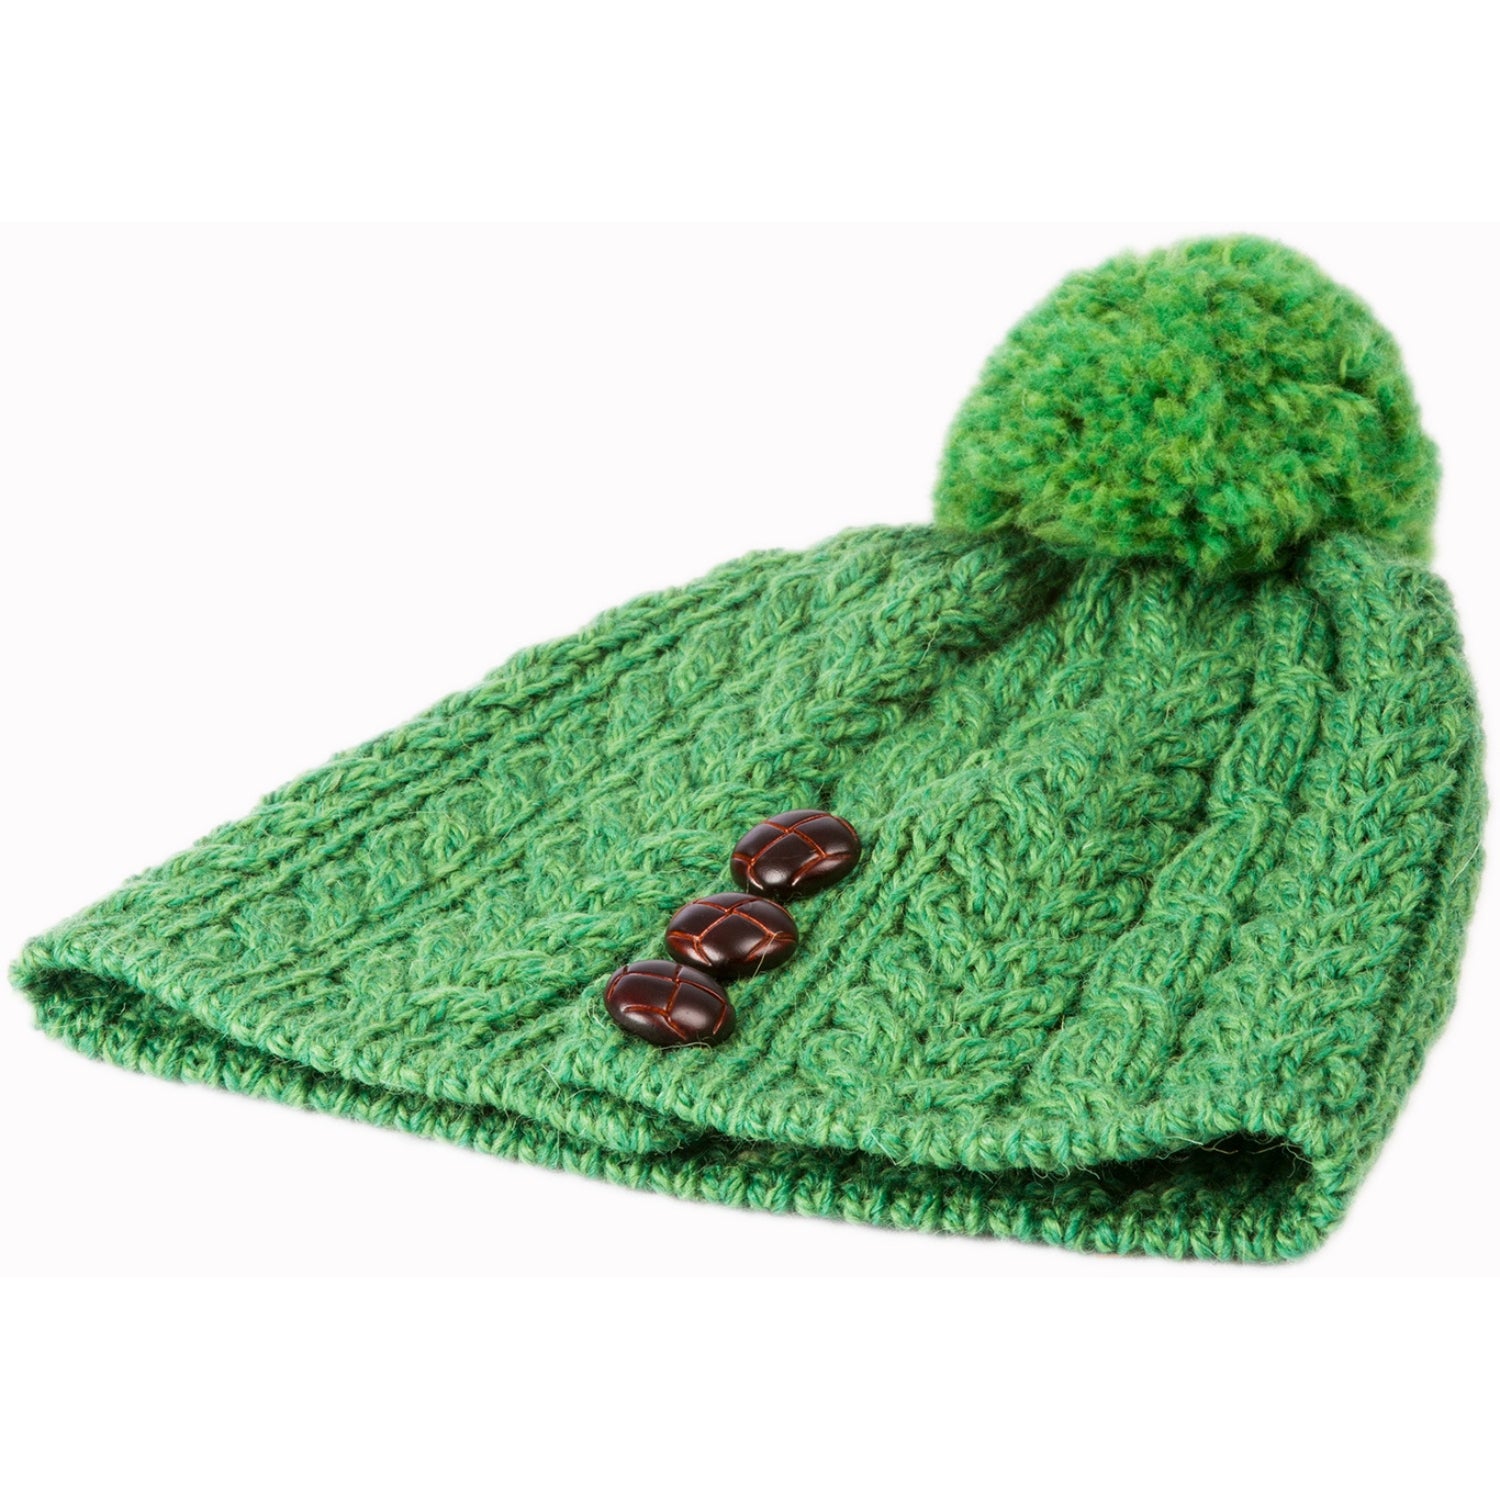 Aran Beanie Hat with Pom Pom | Green